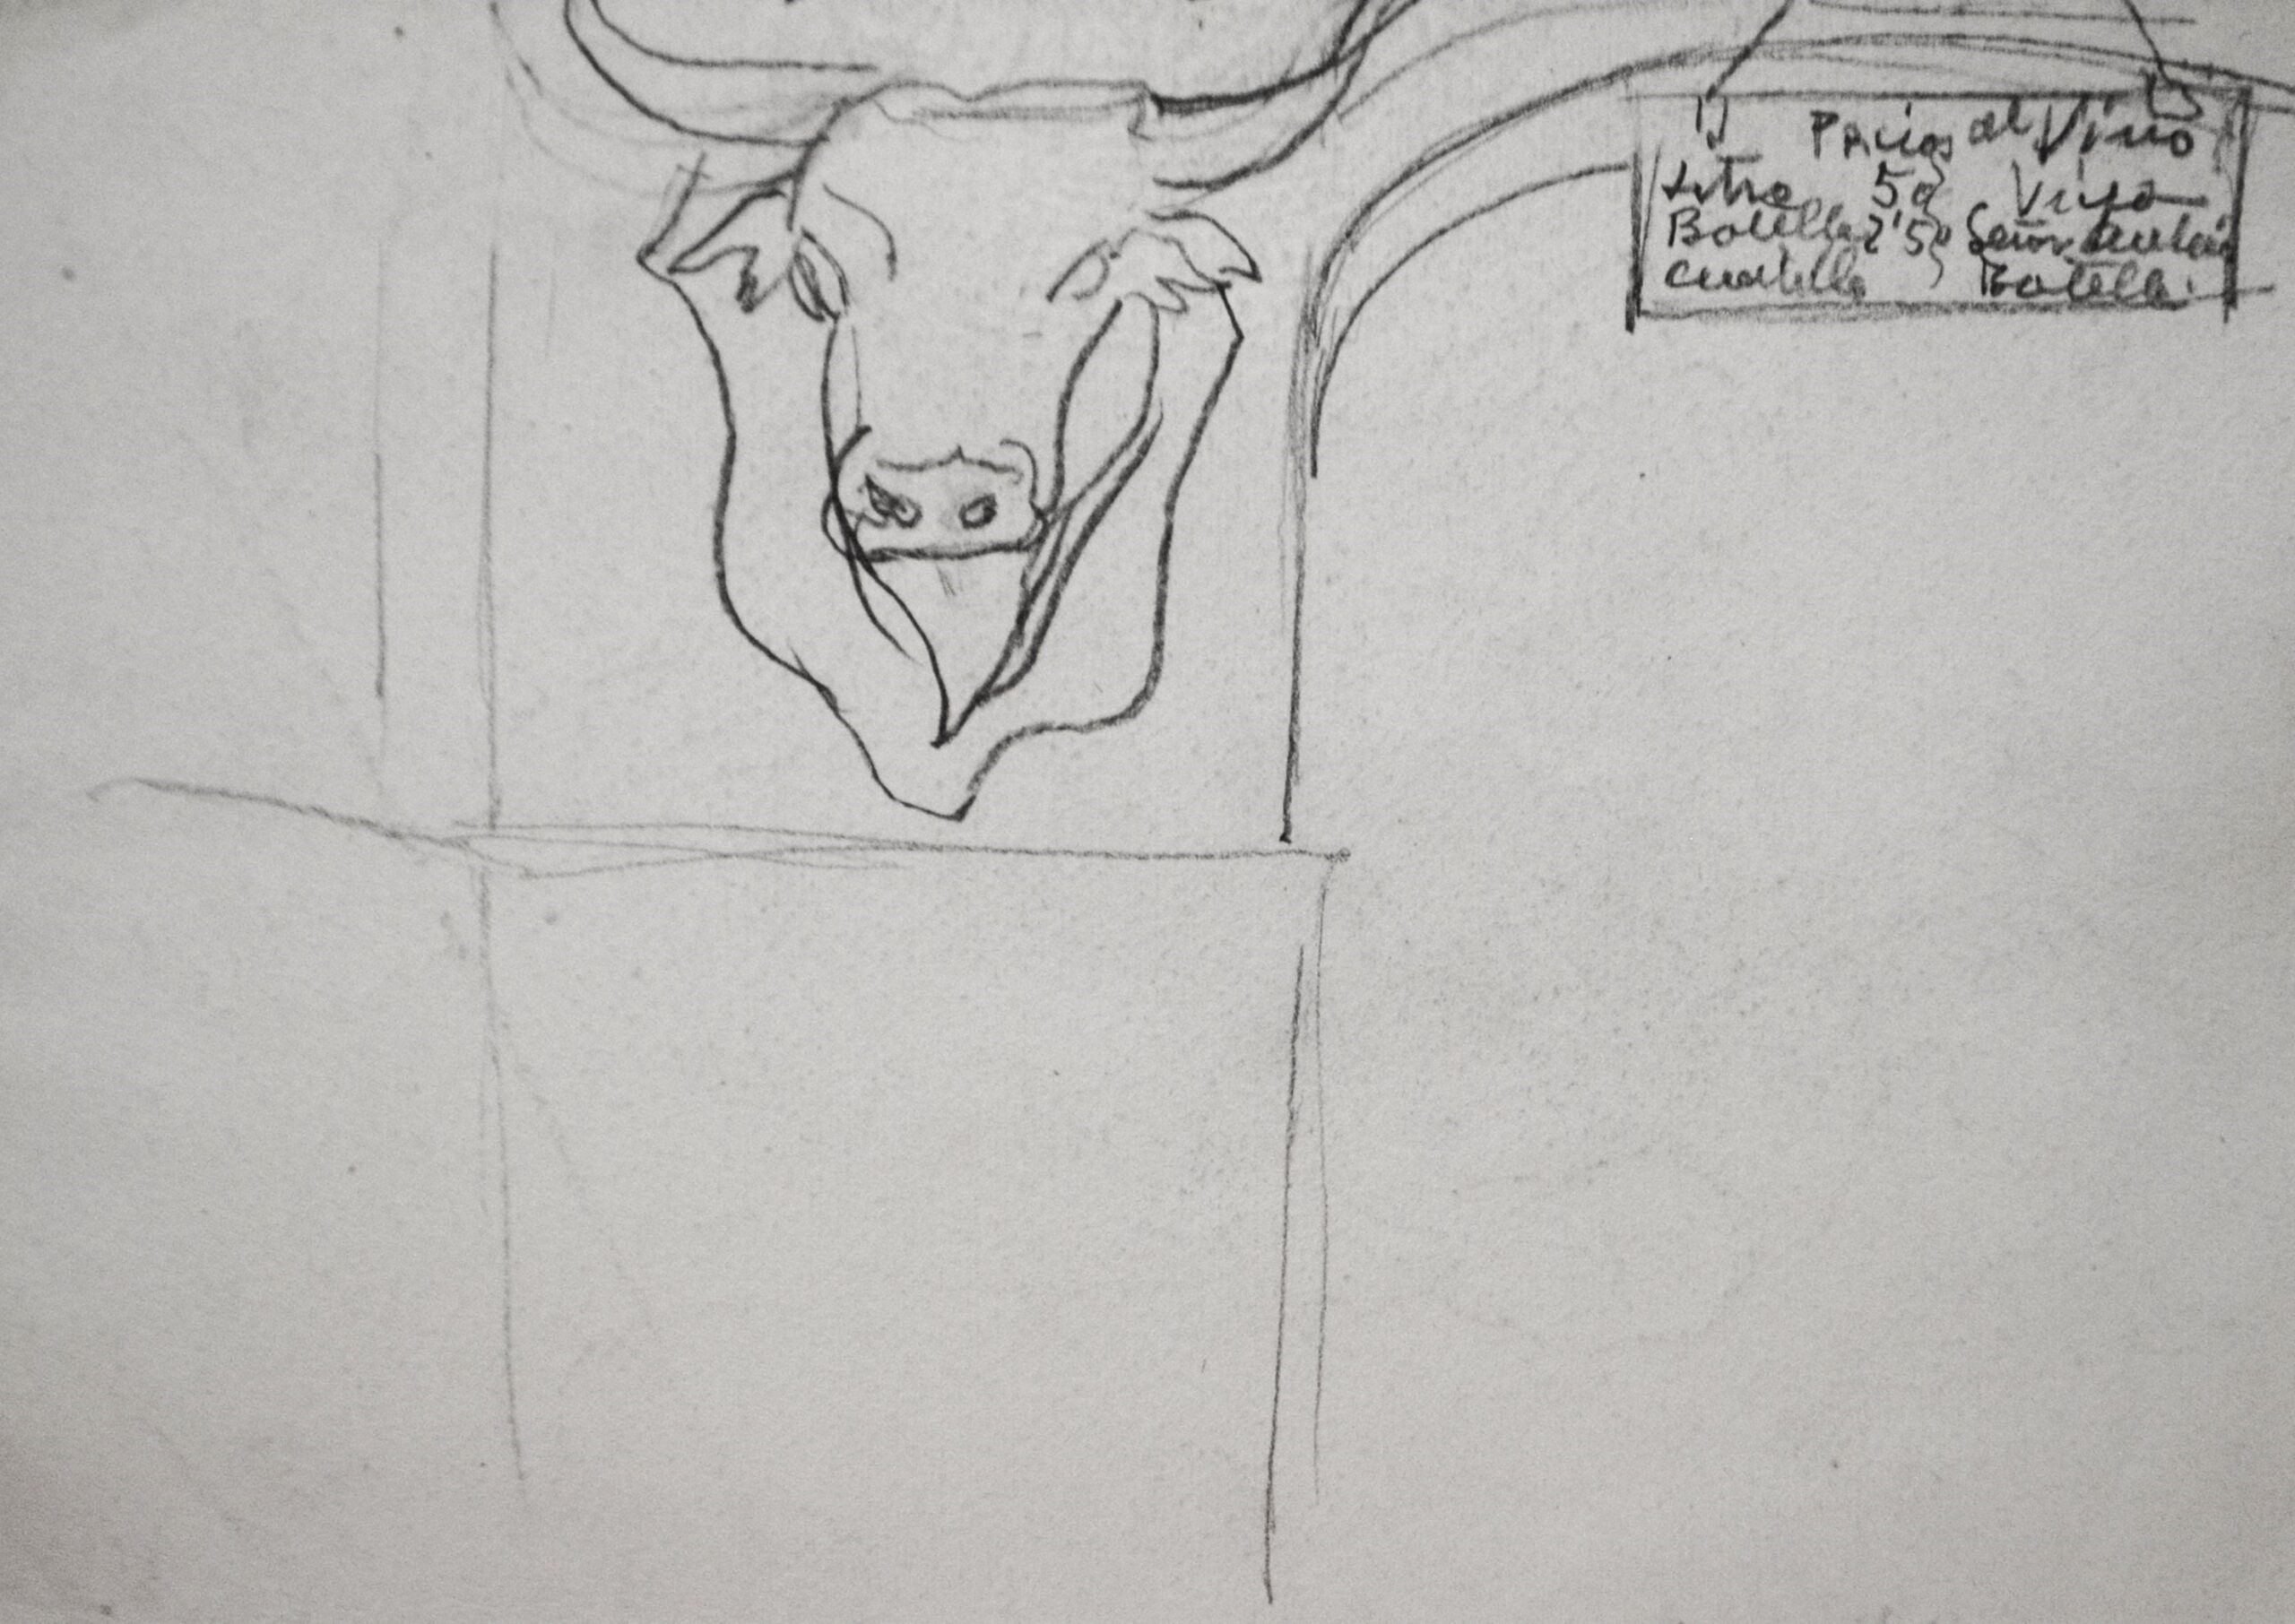 Dibujo de José Manaut. Cabeza de toro disecada. Se supone taberna con lista de precios arriba a la derecha.